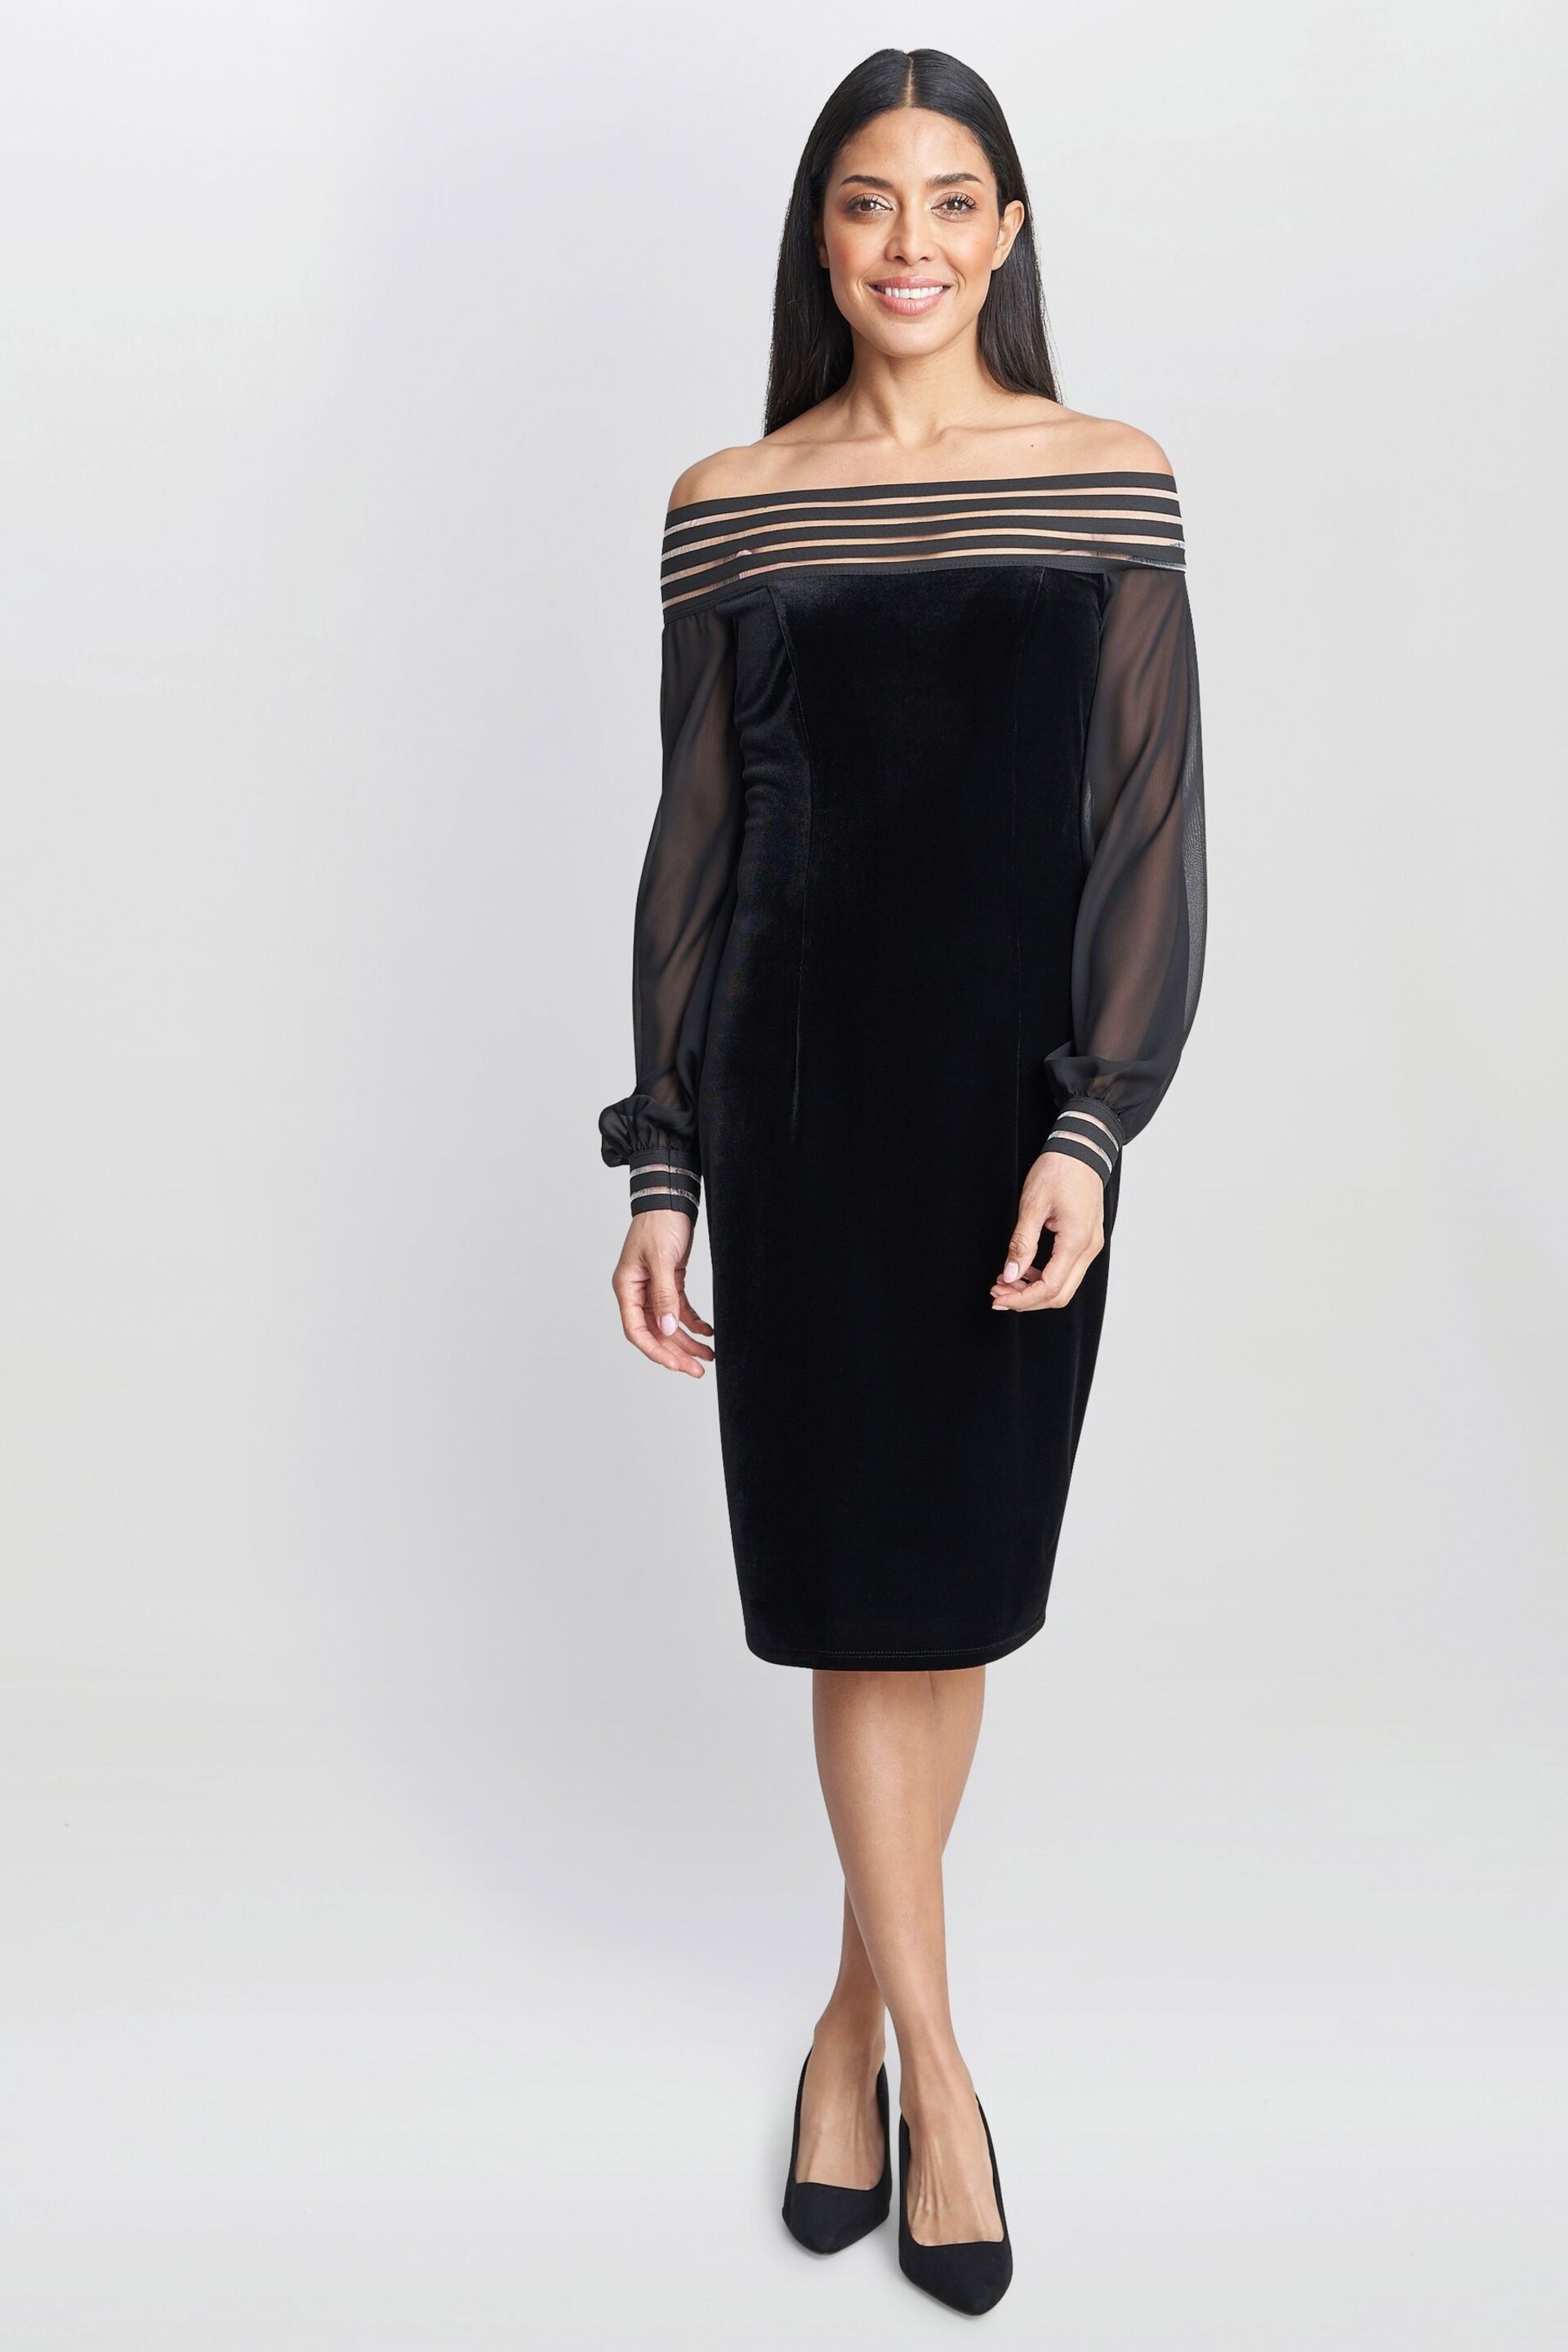 Gina Bacconi Taylor Velvet Off The Shoulder Black Dress - Image 3 of 5